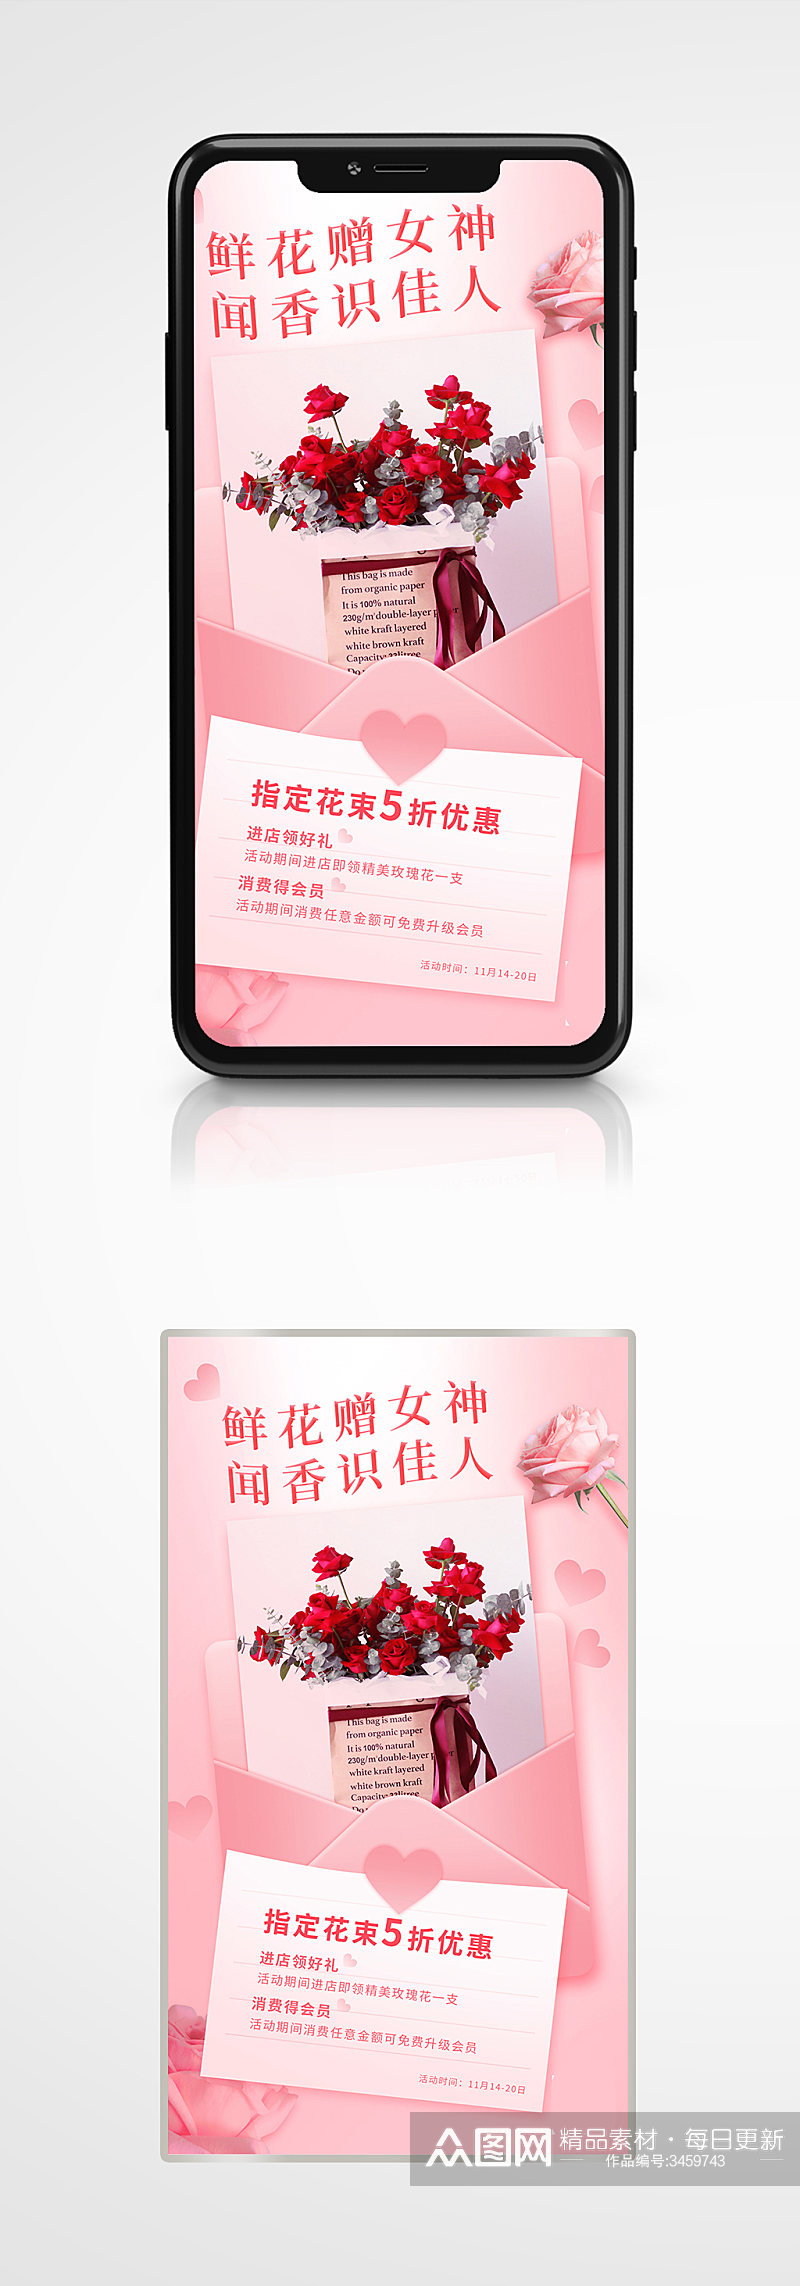 粉色鲜花店浪漫促销手机海报清新素材